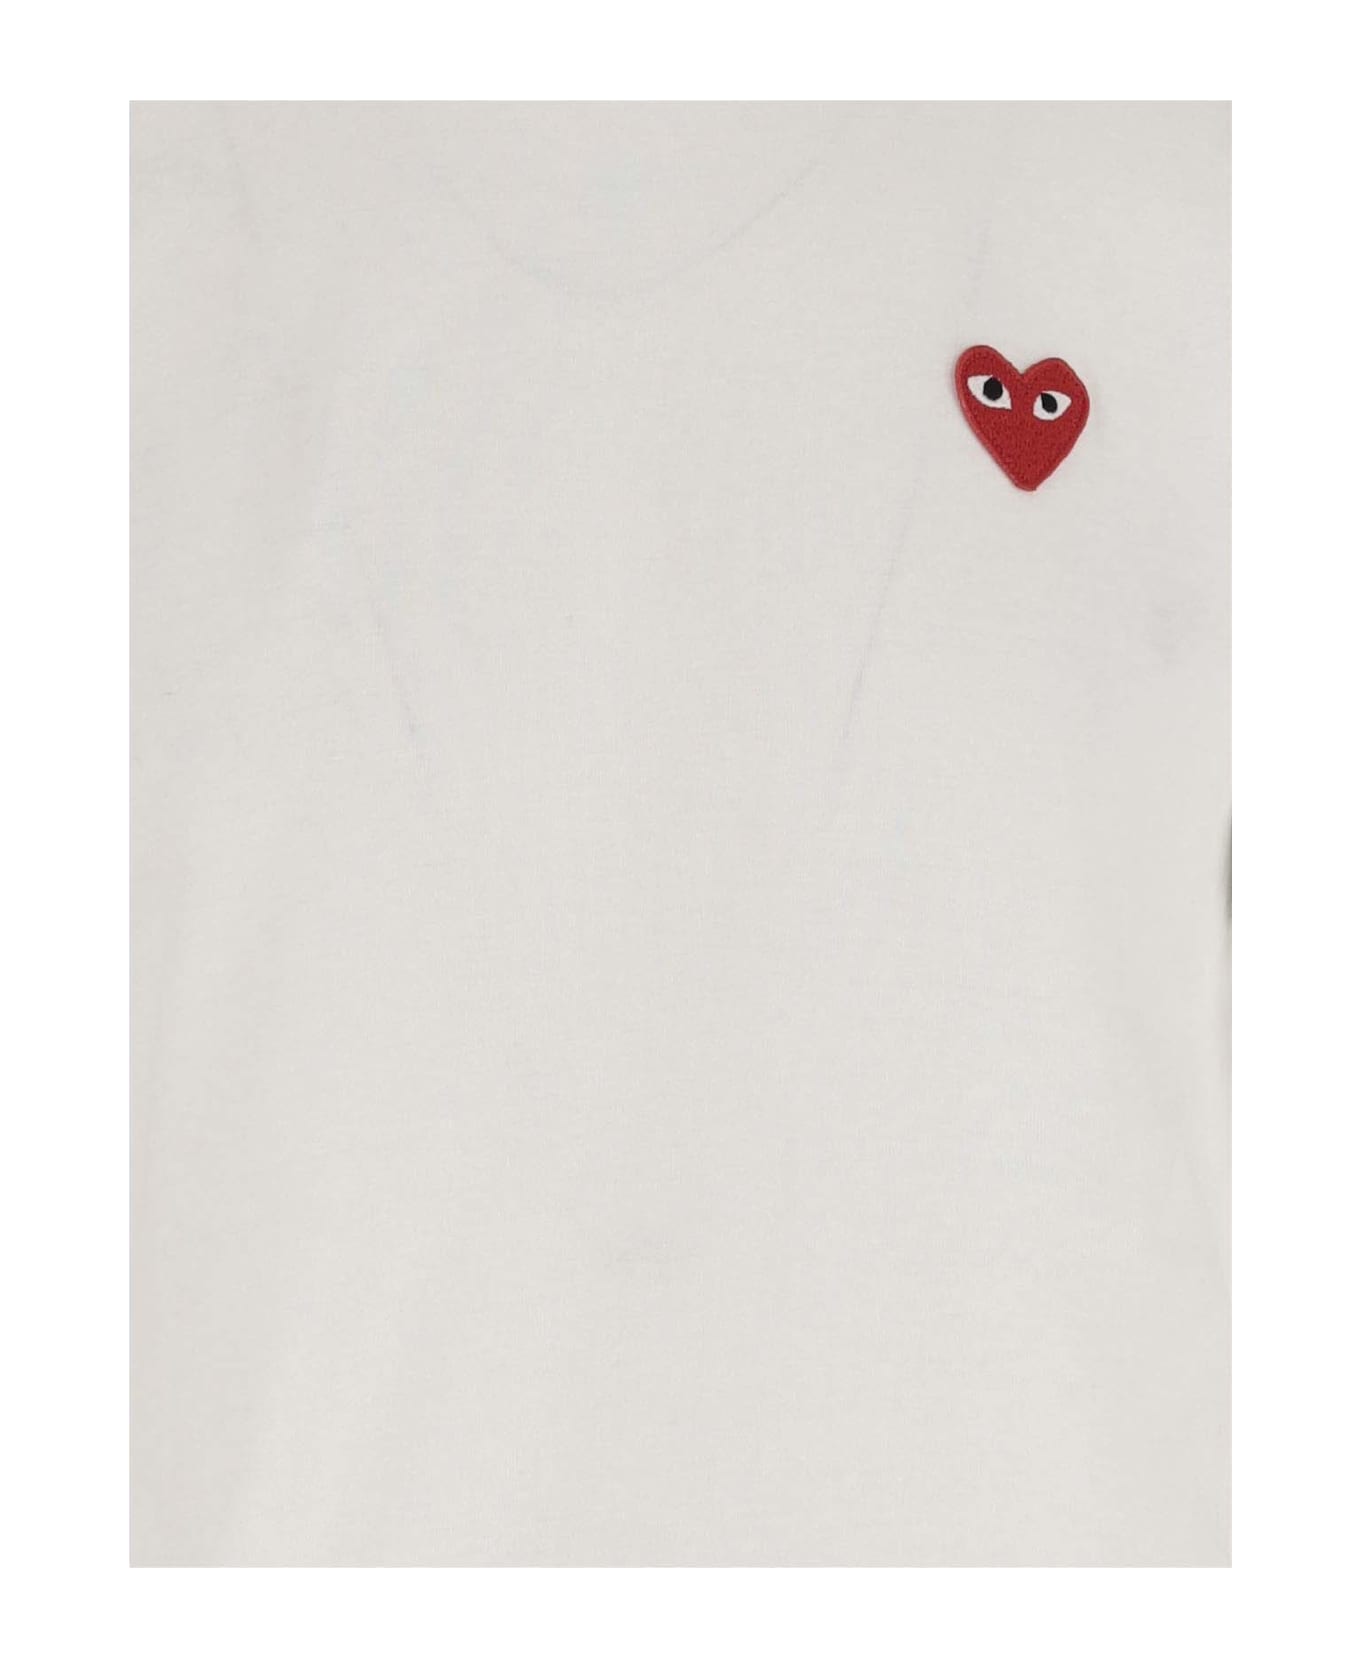 Comme des Garçons Cotton T-shirt With Logo - White